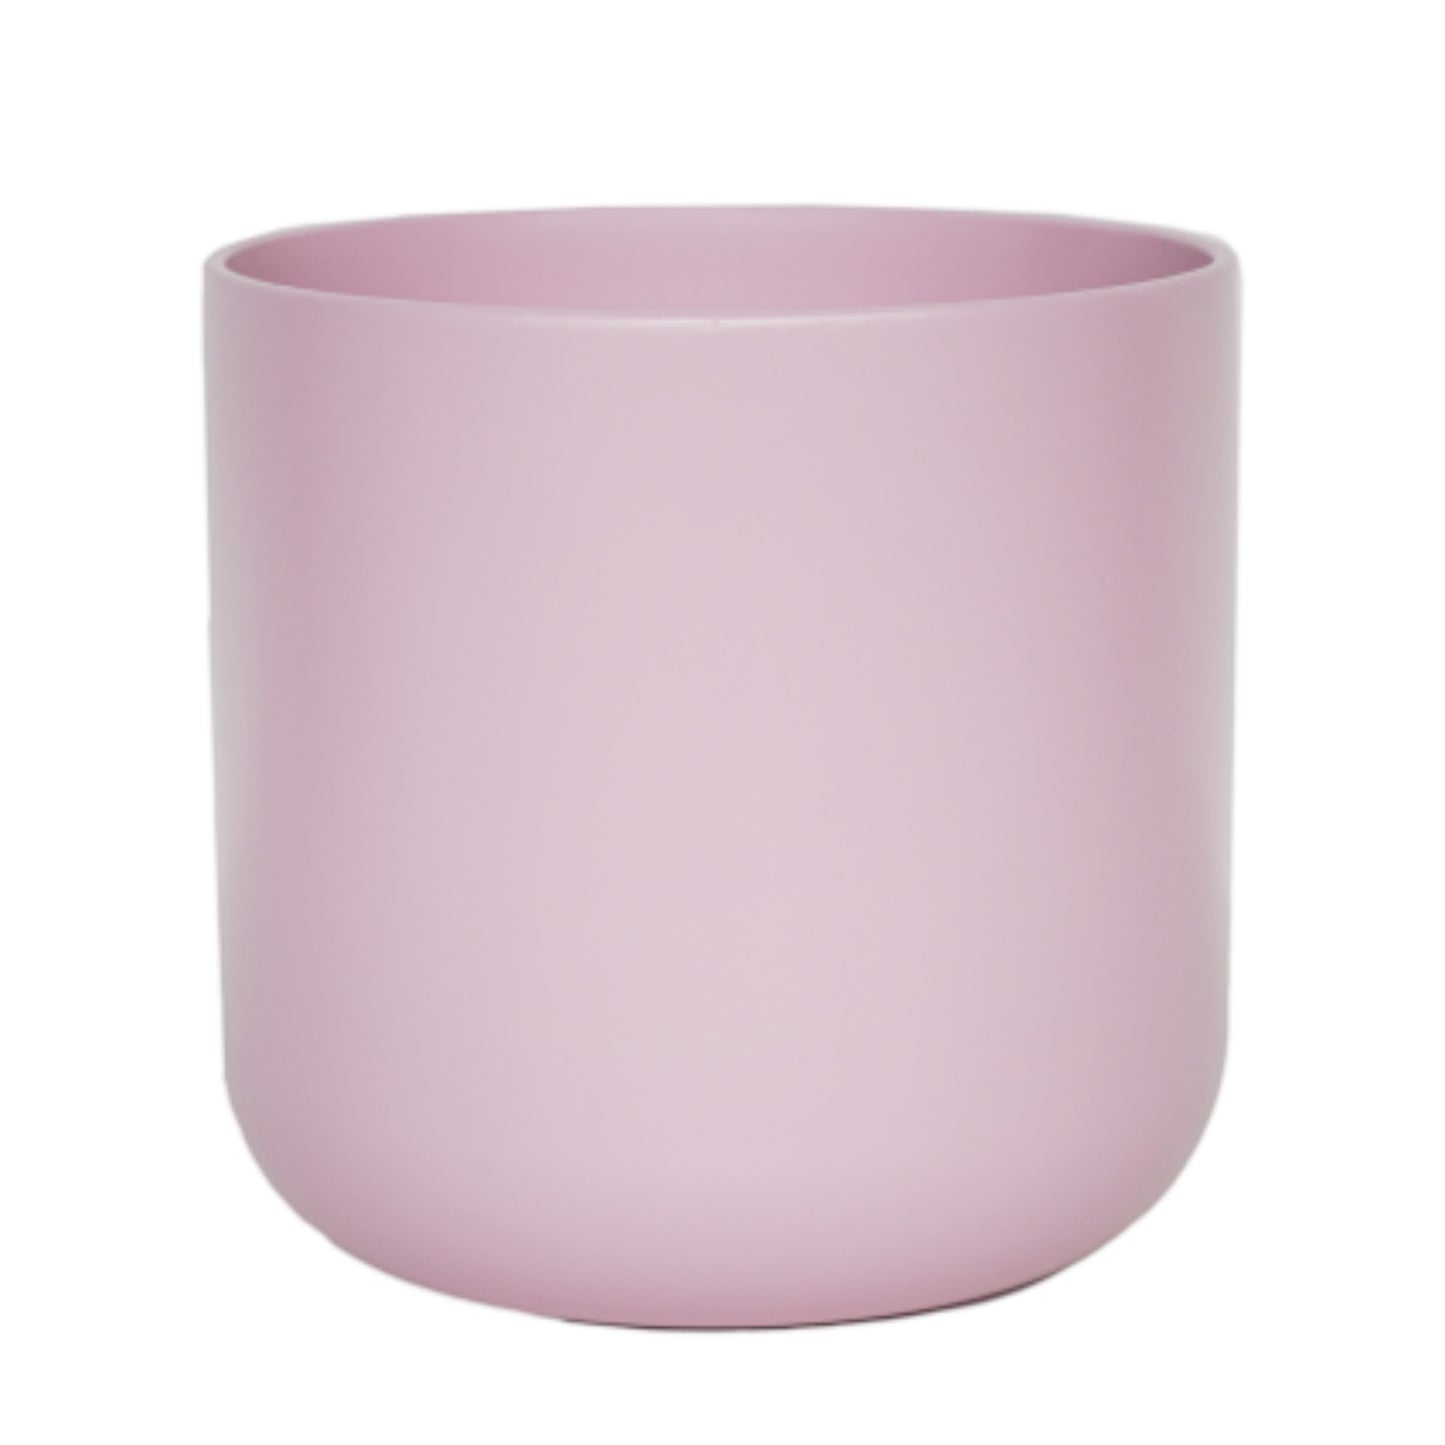 Lisbon Pink Clay Pot